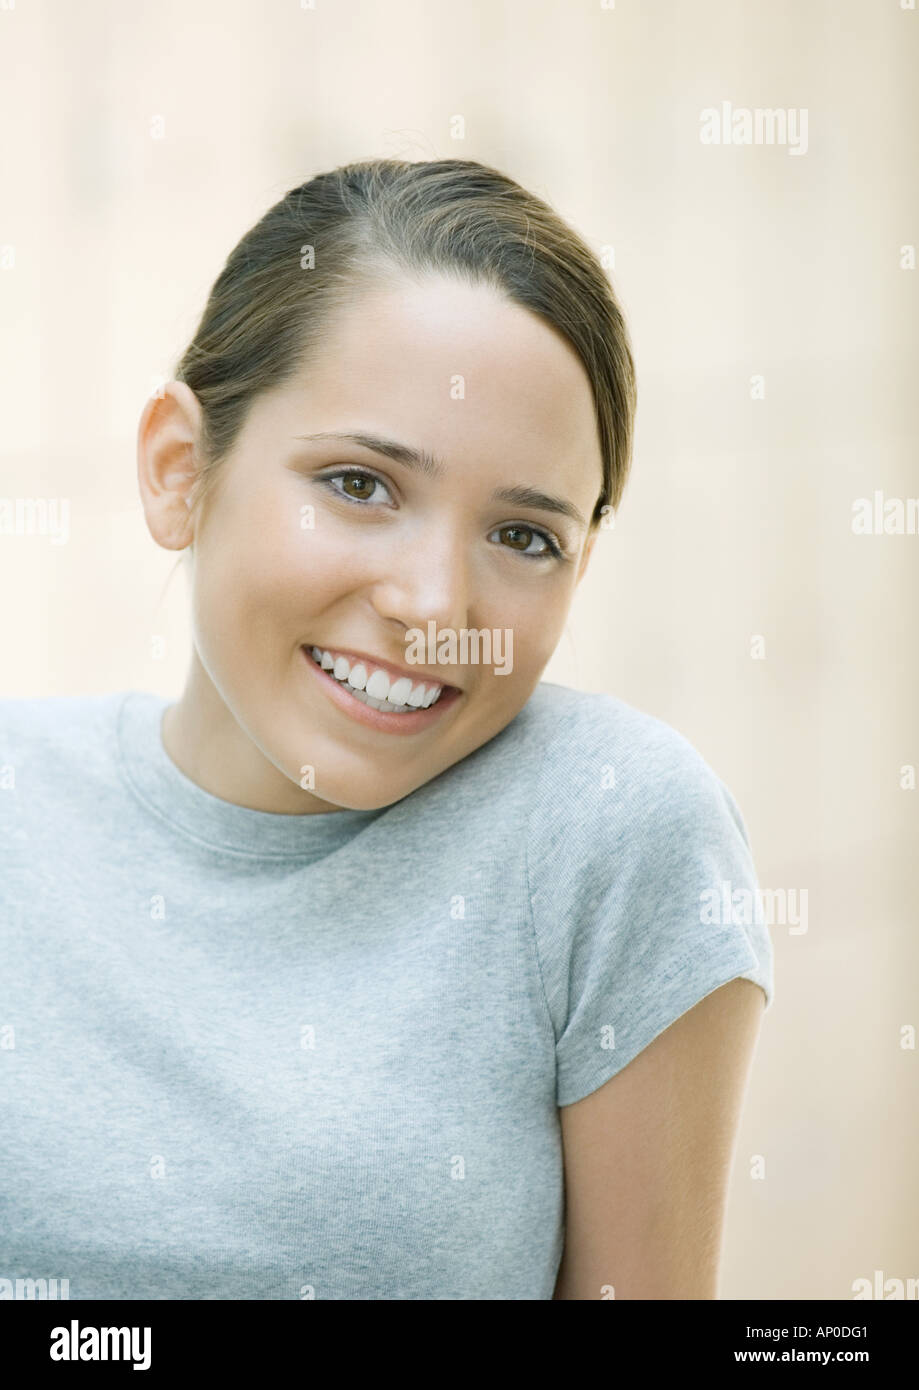 Teenage girl, portrait Stock Photo